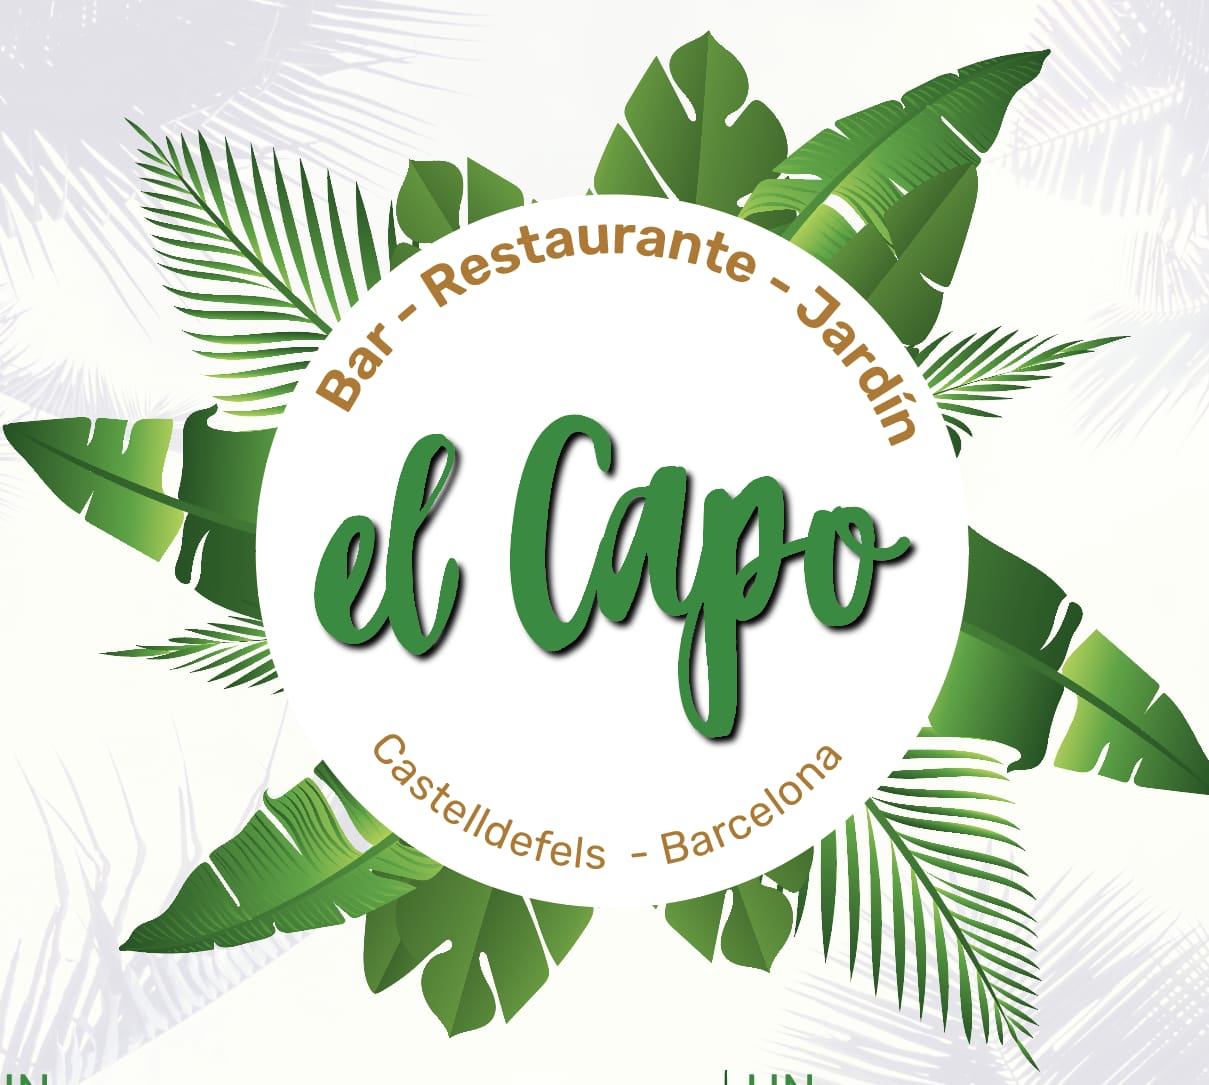 El Capo bar restaurant | Consorci de Turisme del Baix Llobregat